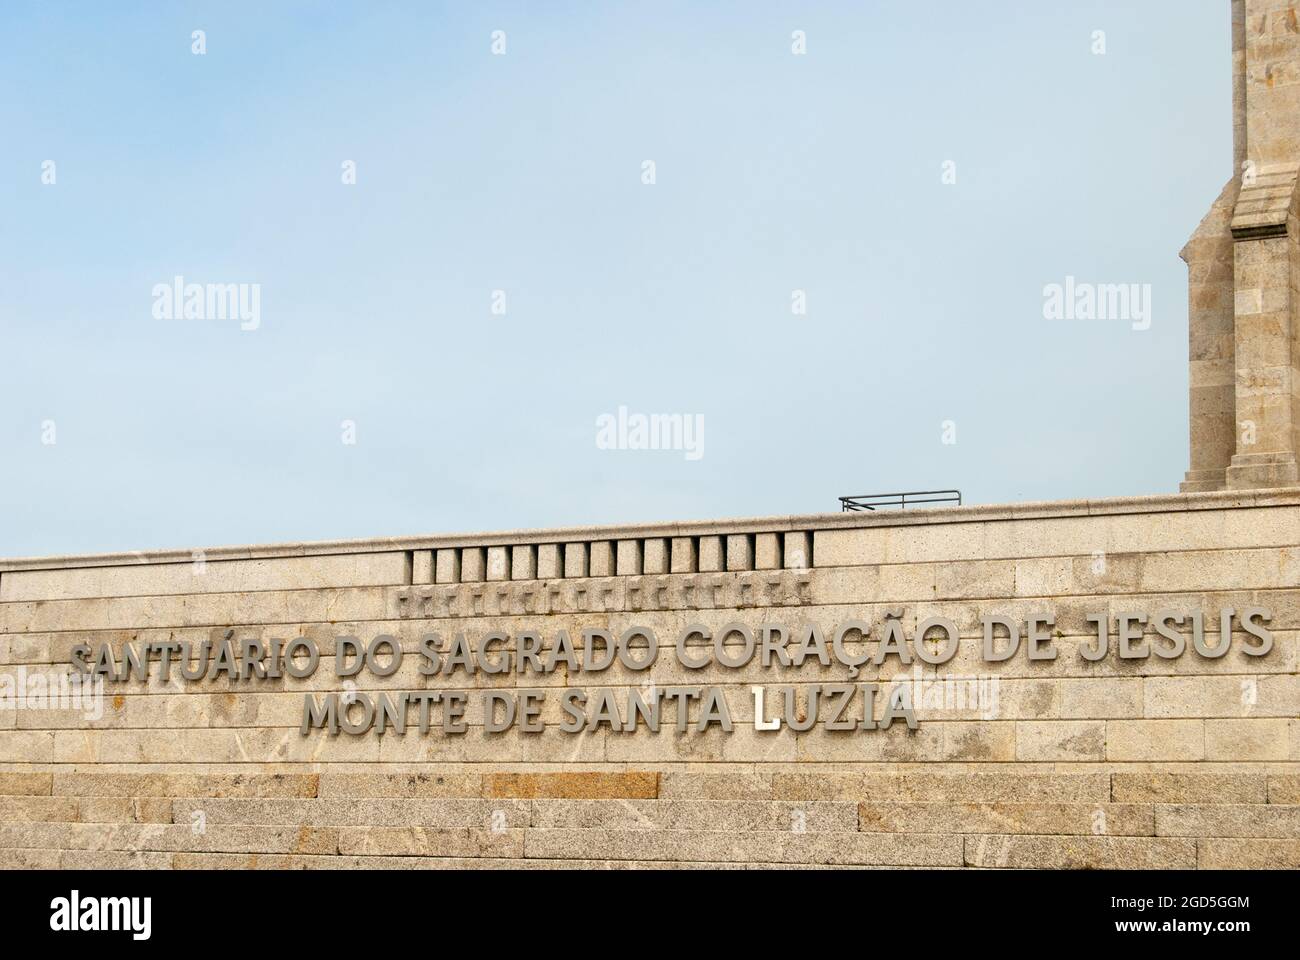 Viana do Castelo, Portugal - 30. Juli 2021: Heiligtum von Santa Luzia, der Tempel des Heiligen Herzens Jesu Berg Santa Luzia Textschild über dem Stockfoto